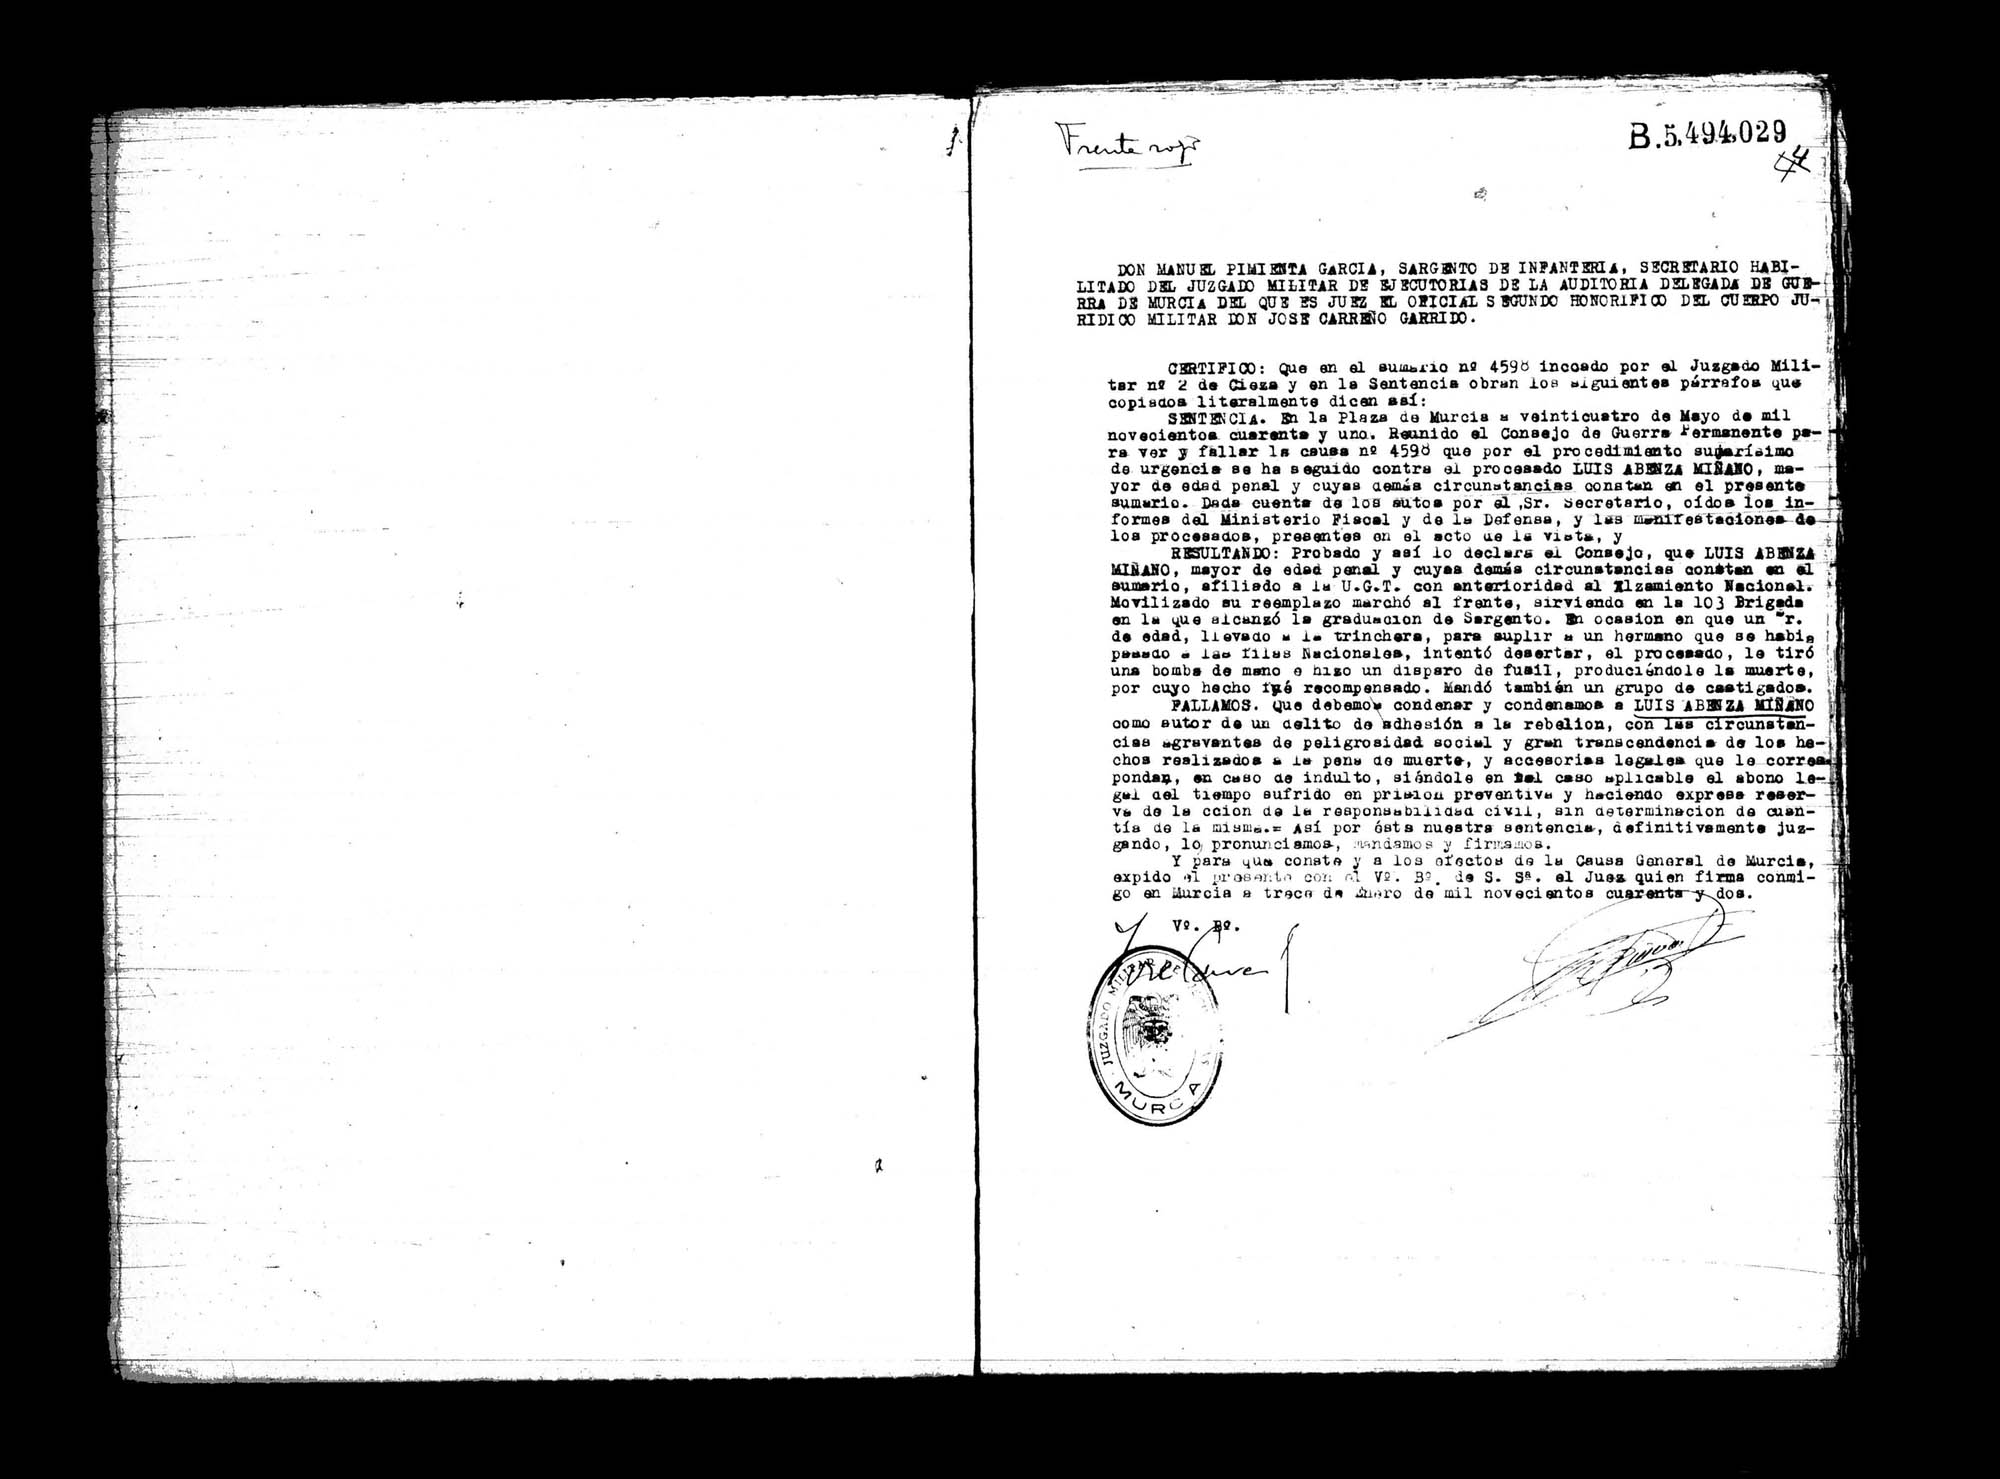 Certificado de la sentencia pronunciada contra Luis Abenza Miñano, causa 4598, el 24 de mayo de 1941.